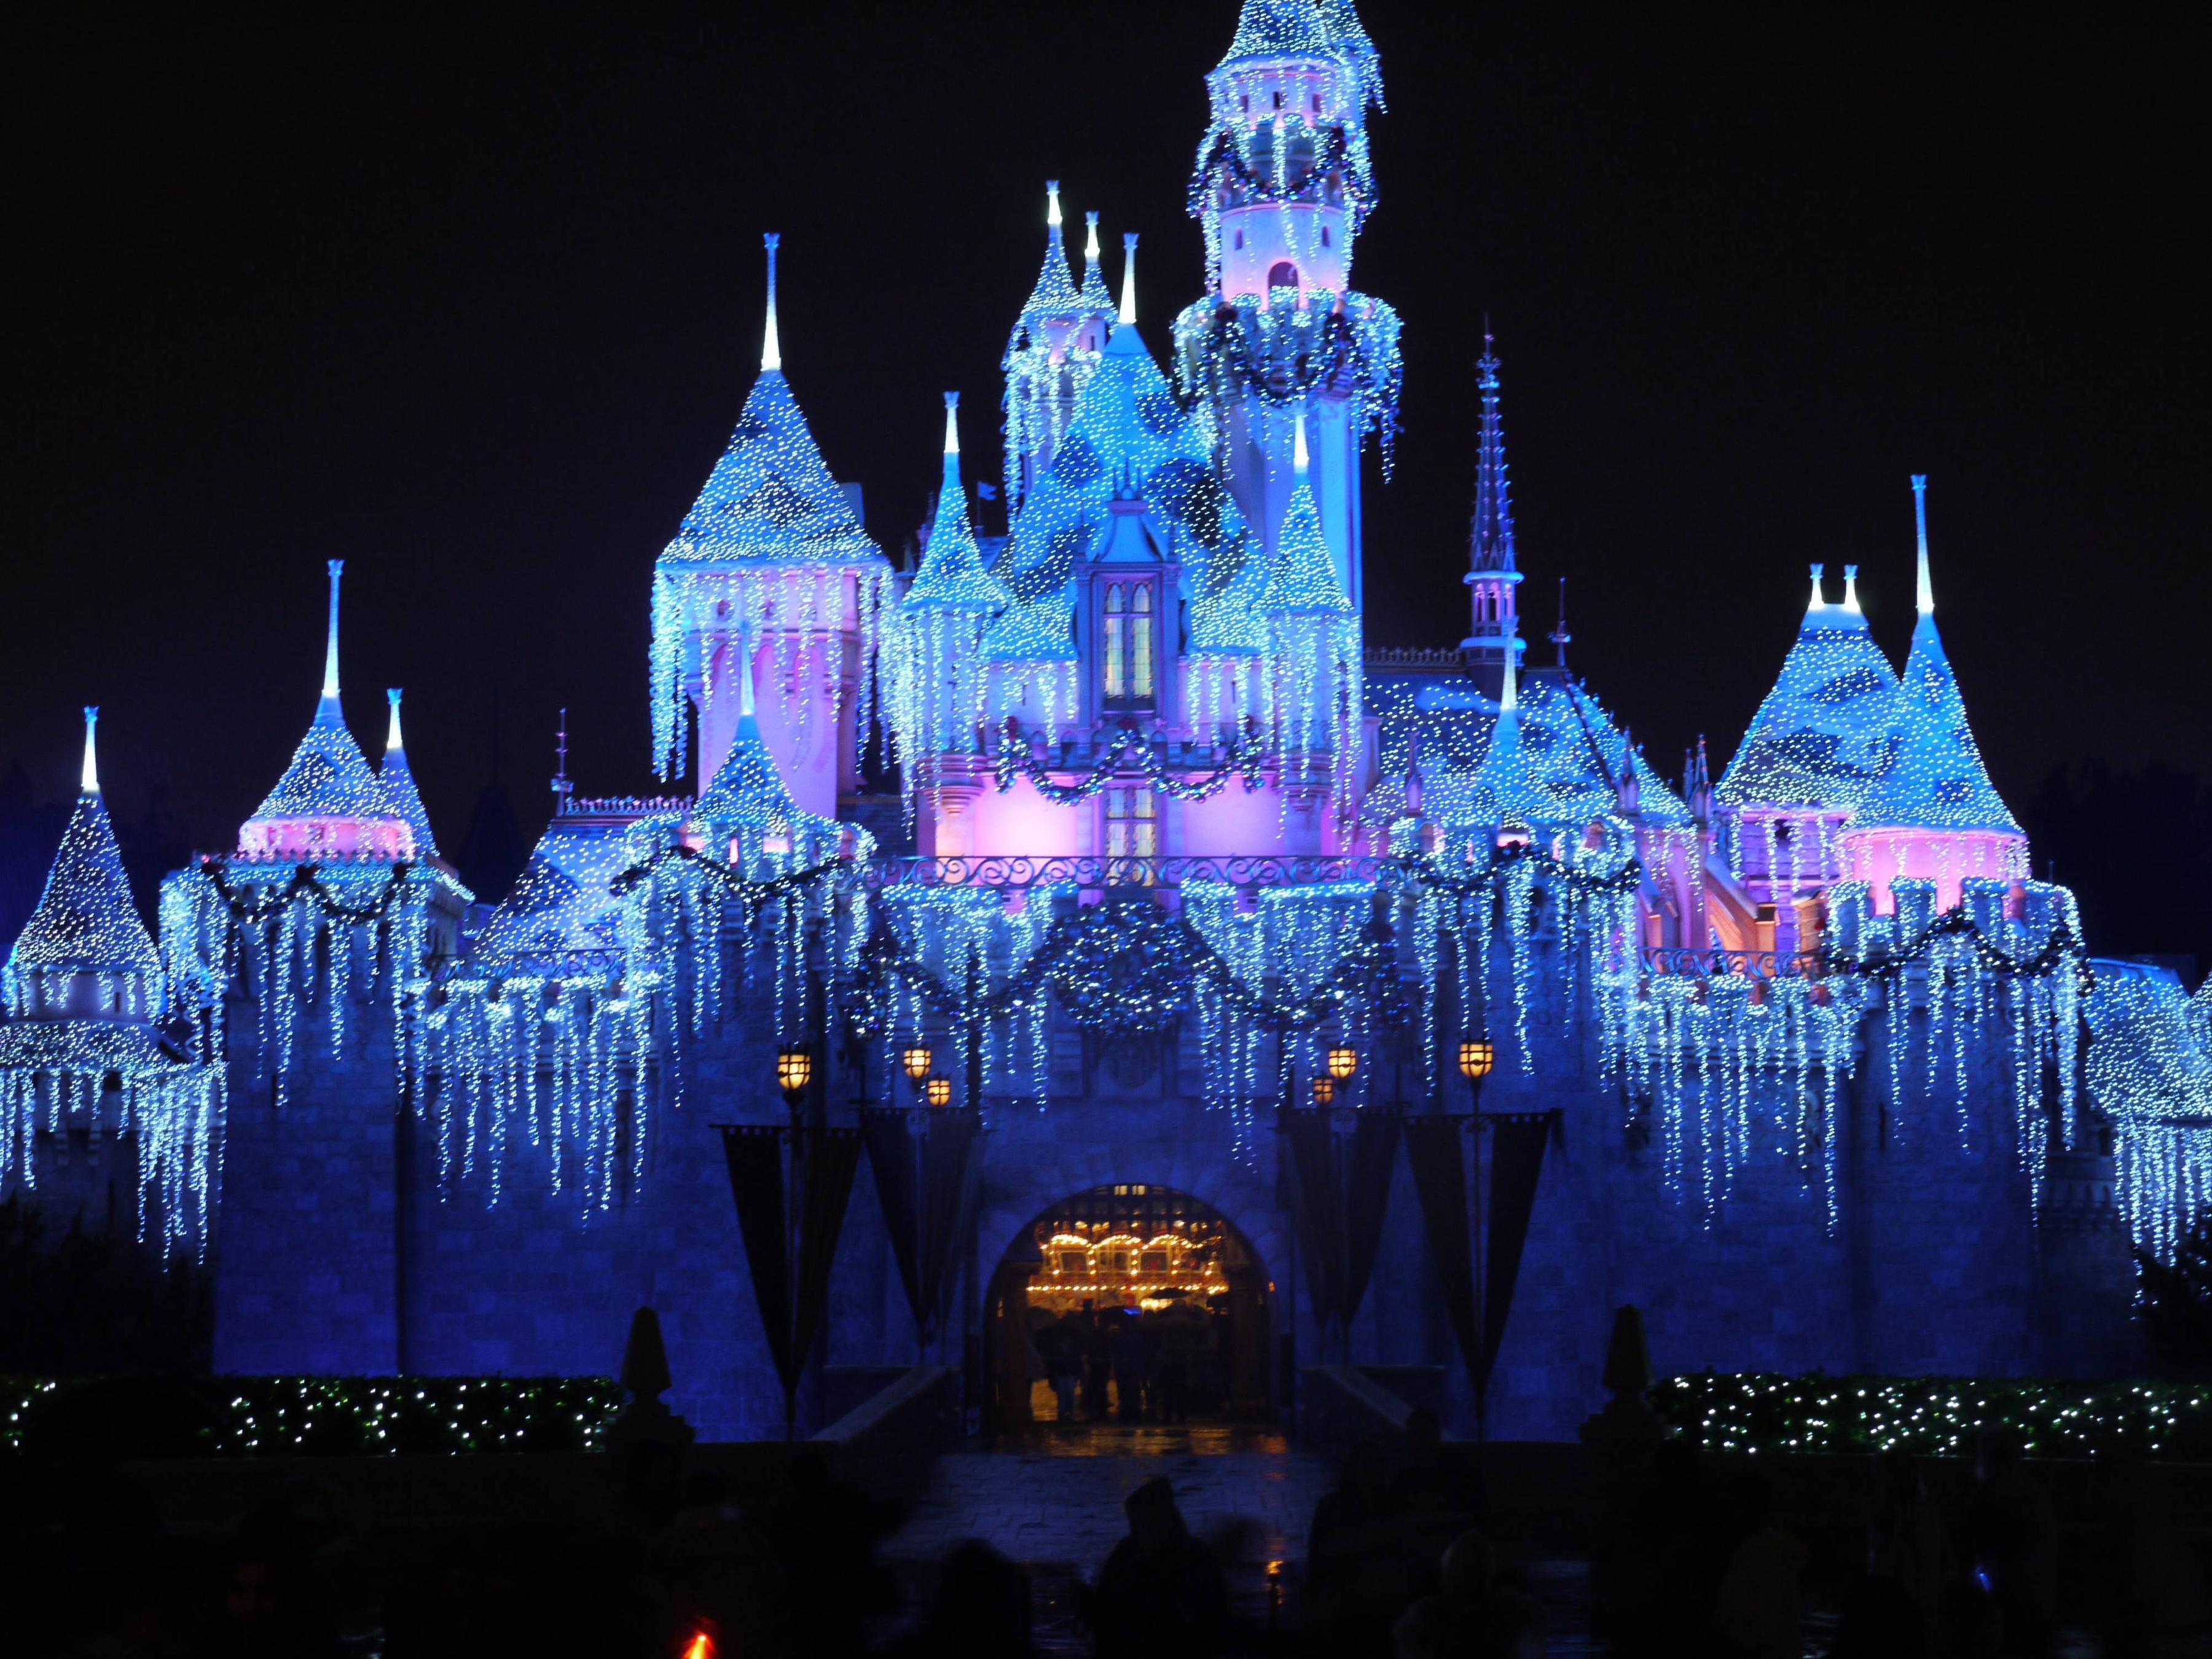 Winter Time At Disney Land